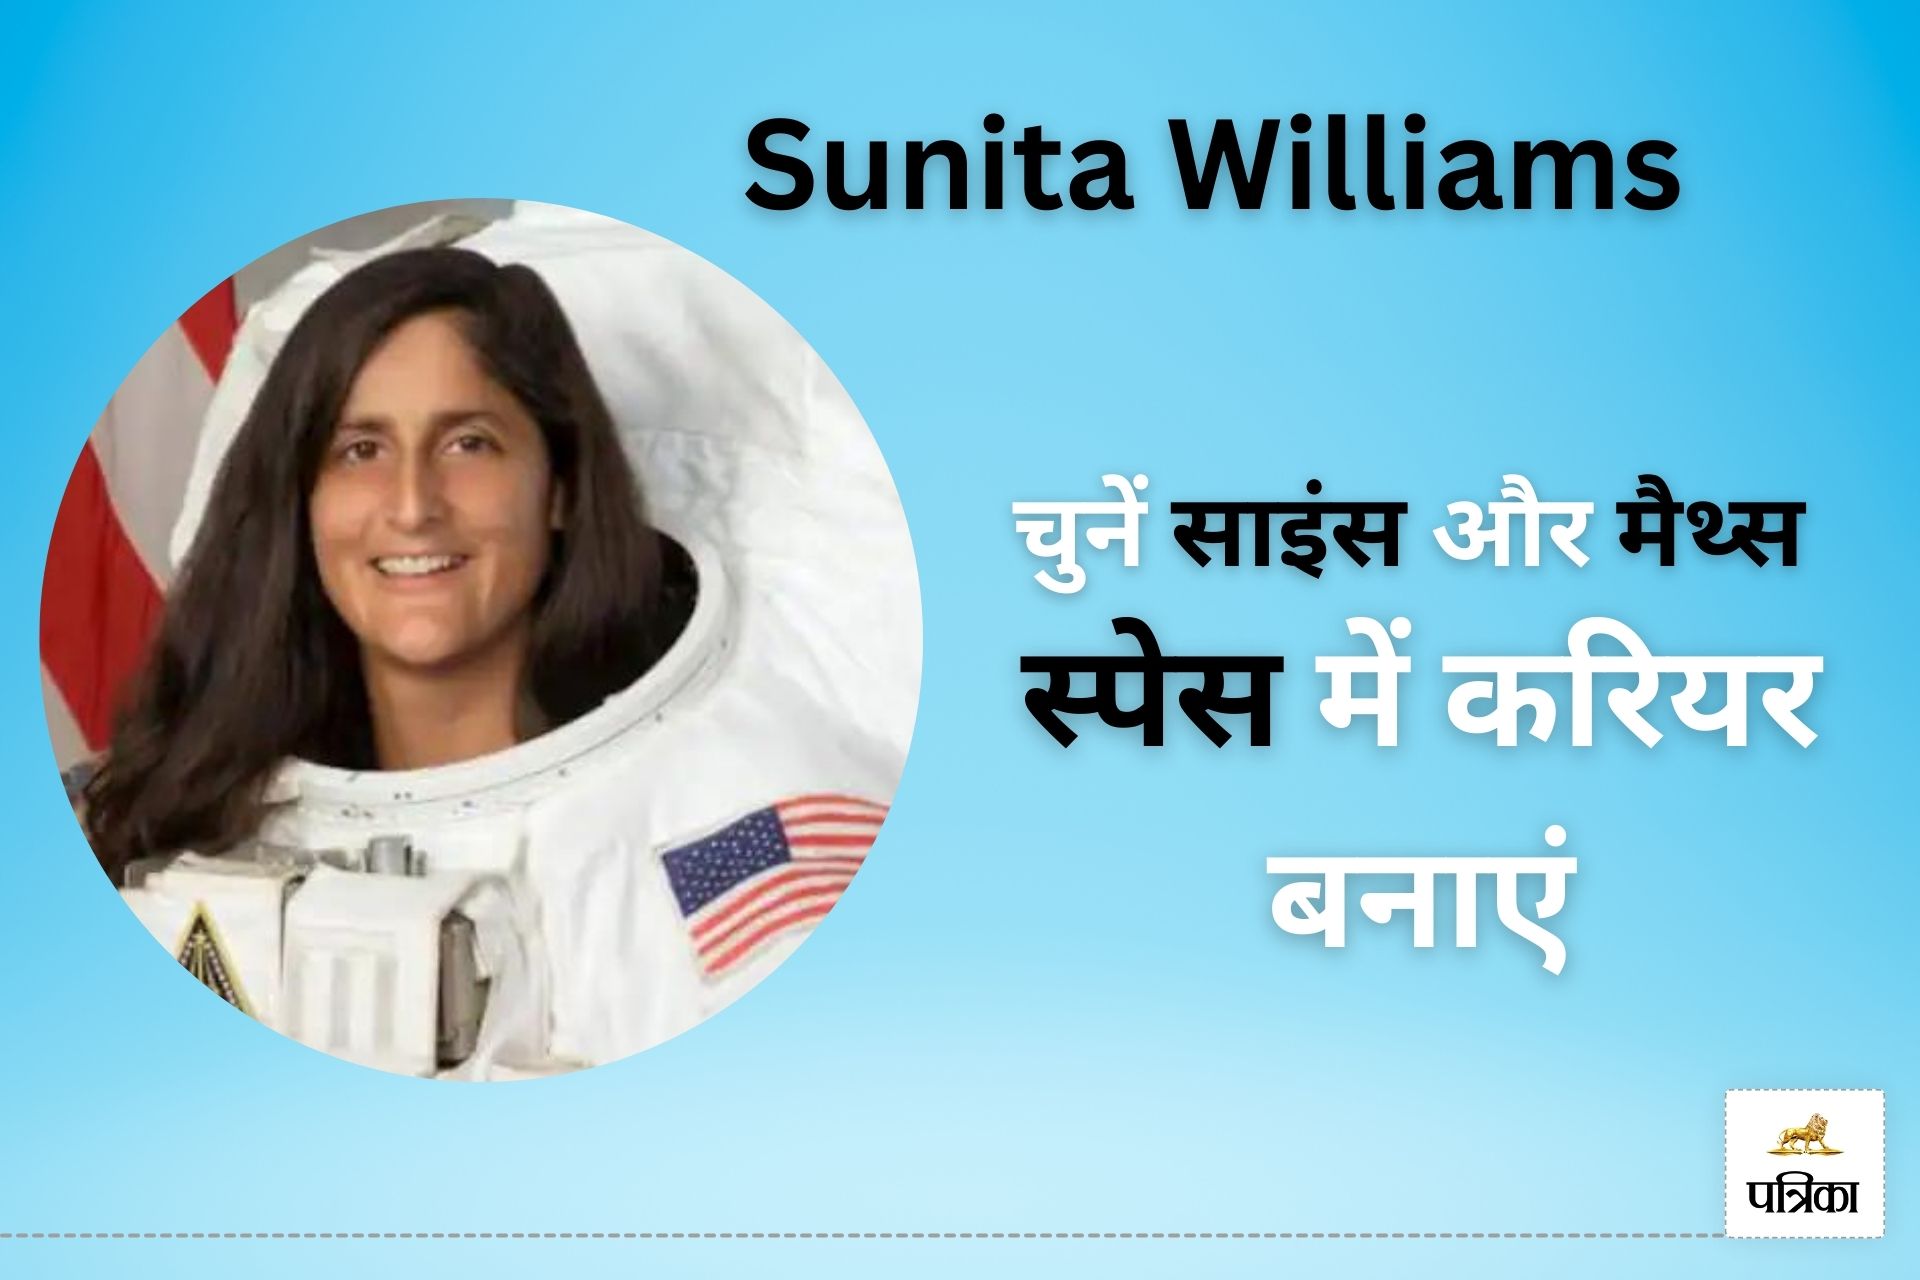 क्या आपको भी रहस्मय लगता है स्पेस? जानिए Sunita Williams जैसा बनने के लिए क्या
करें